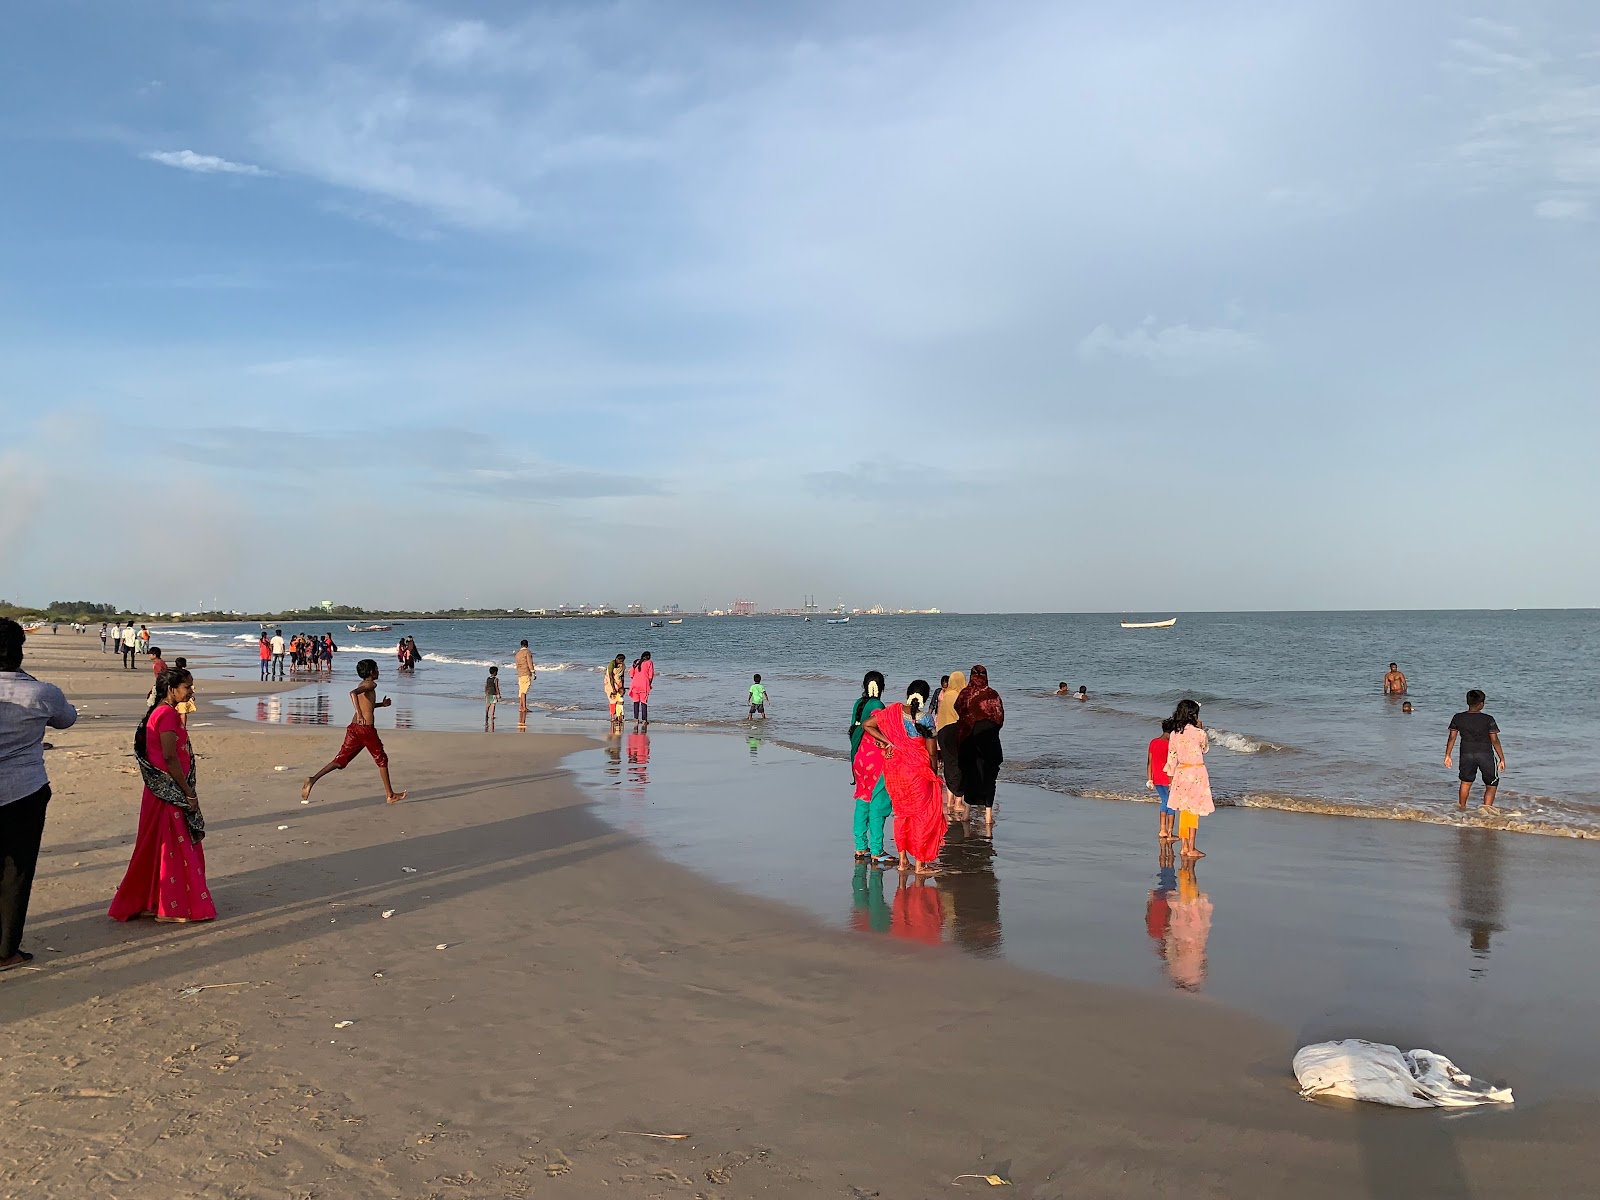 Thlamuthunagar Beach'in fotoğrafı parlak kum yüzey ile